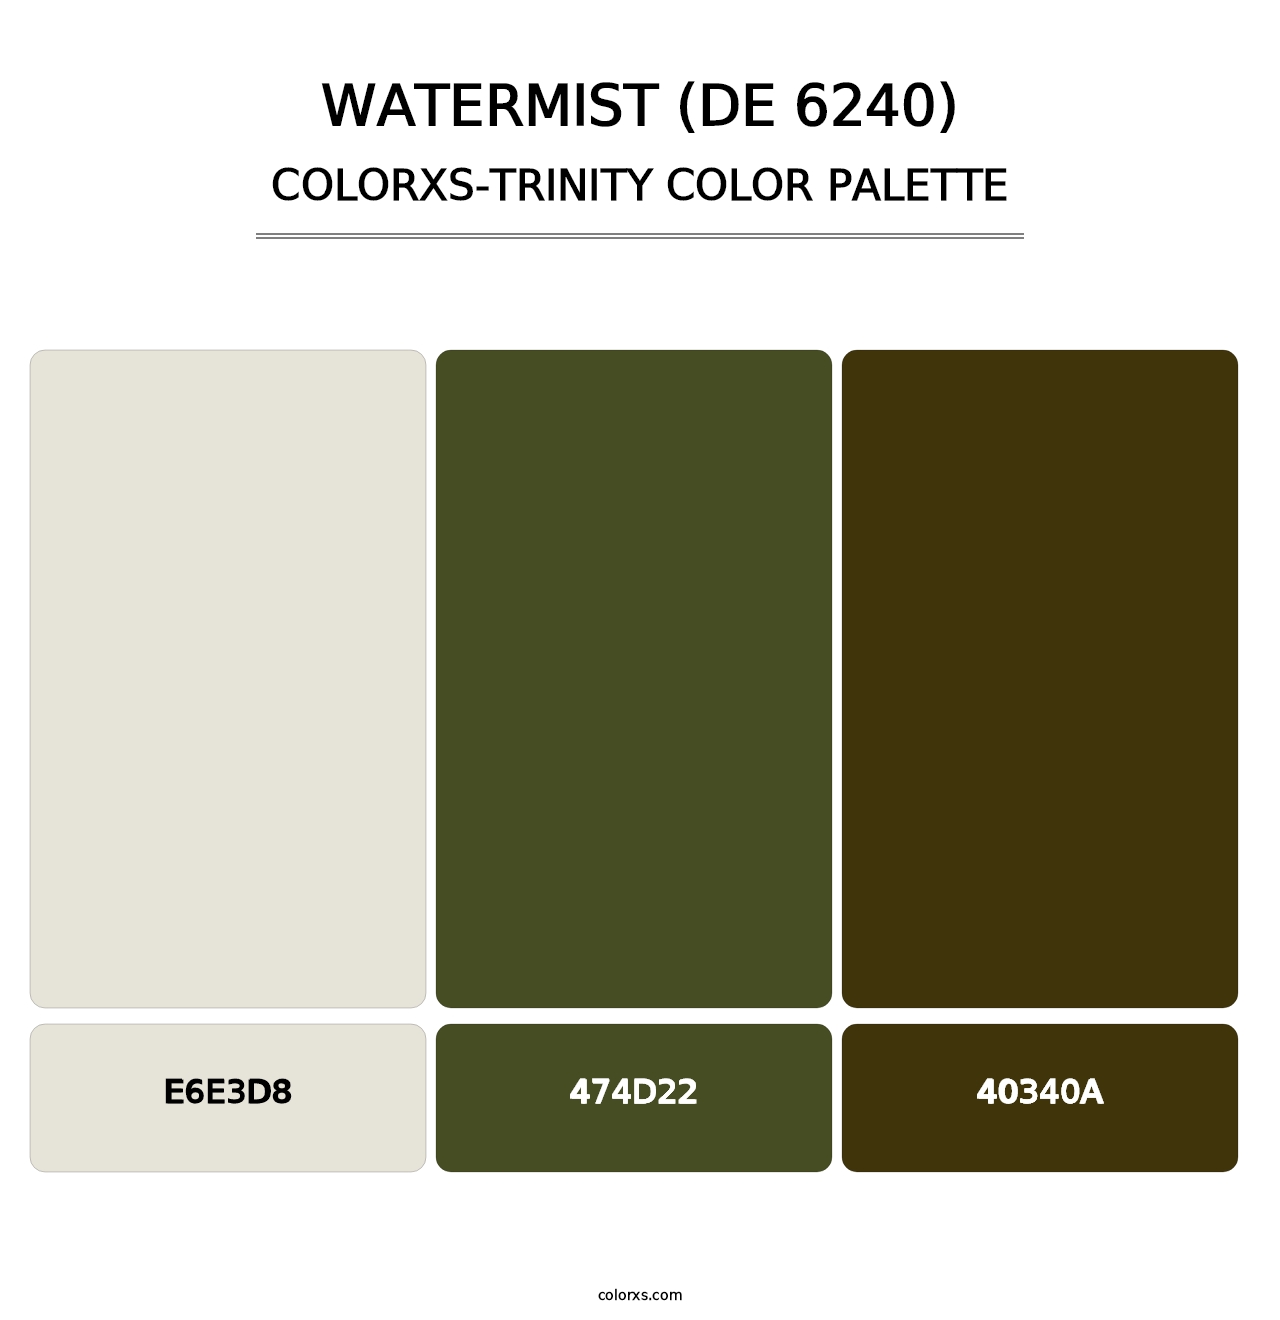 Watermist (DE 6240) - Colorxs Trinity Palette